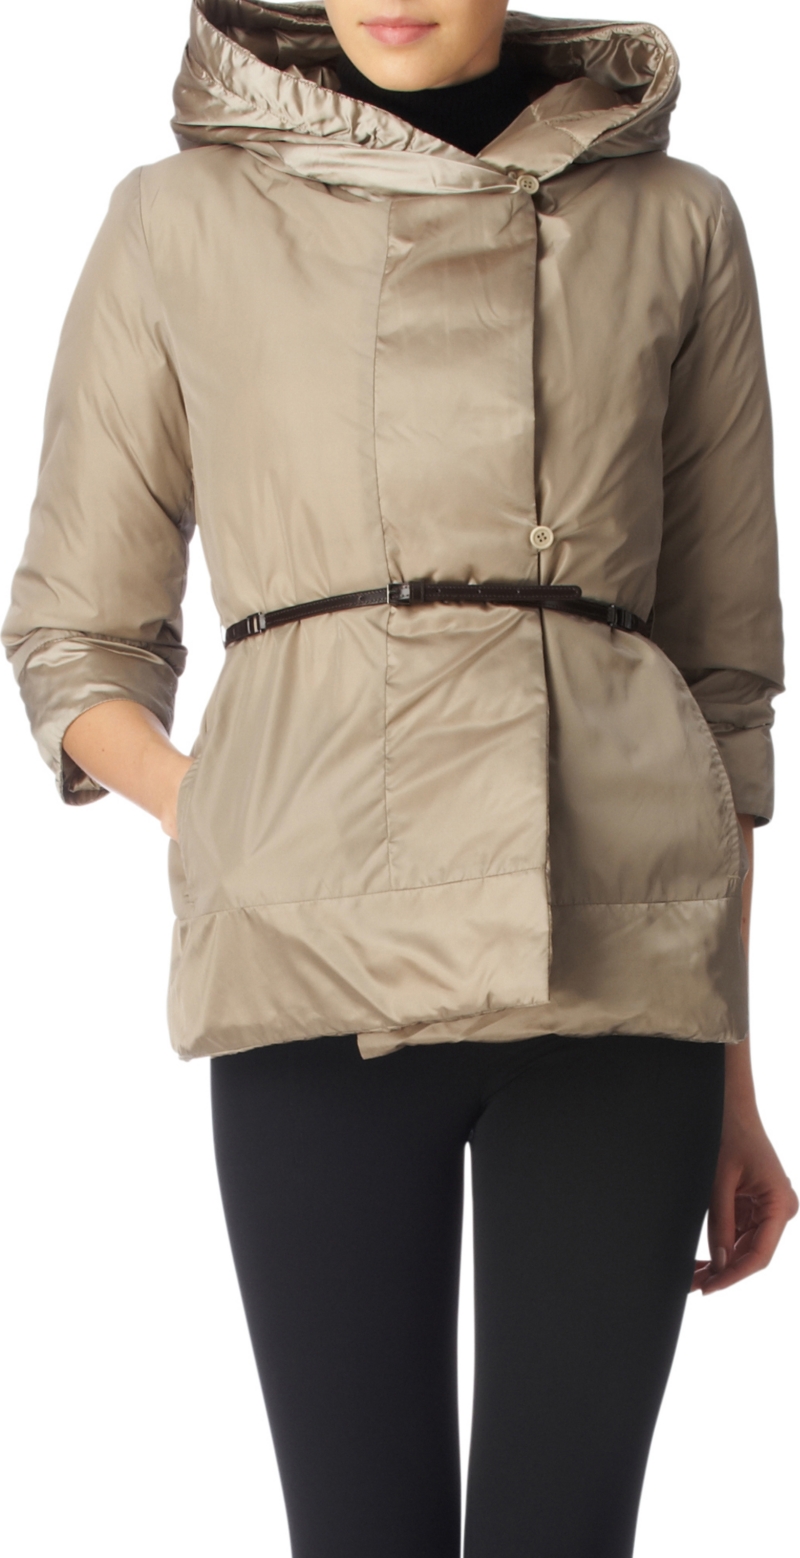 Coats & jackets   Womenswear   Selfridges  Shop Online